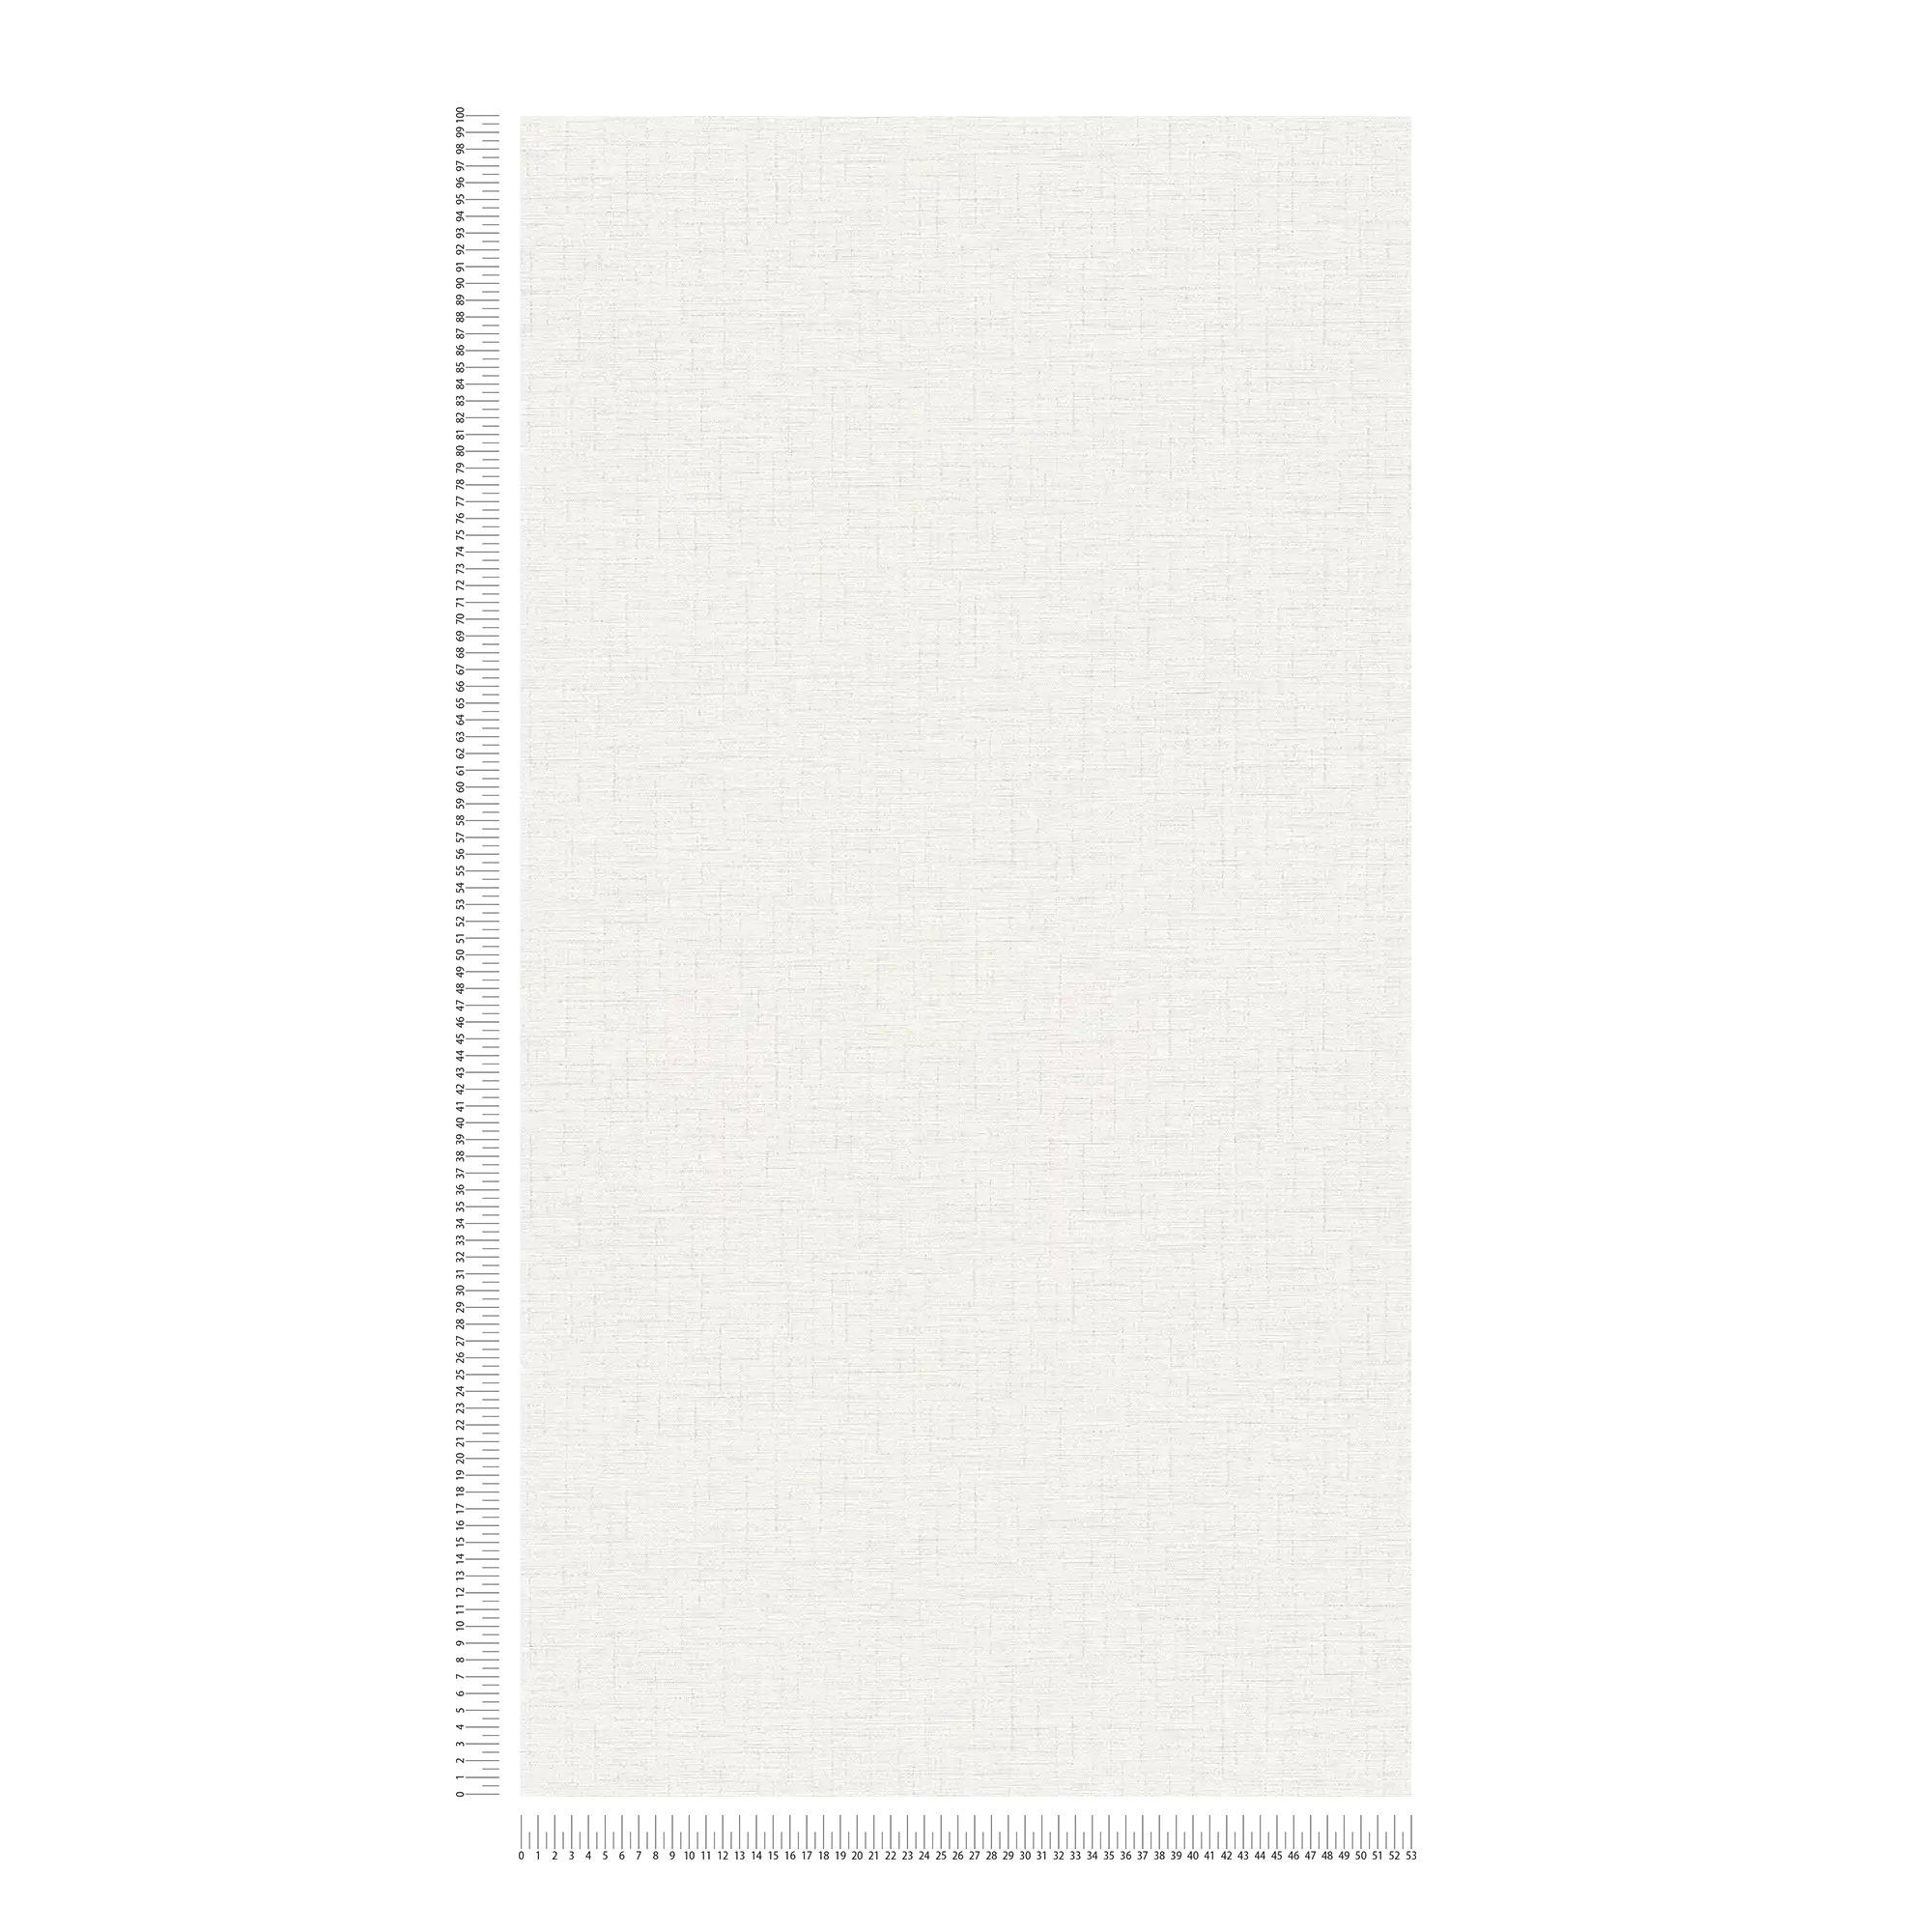             Papier peint uni neutre aspect lin - gris, blanc
        